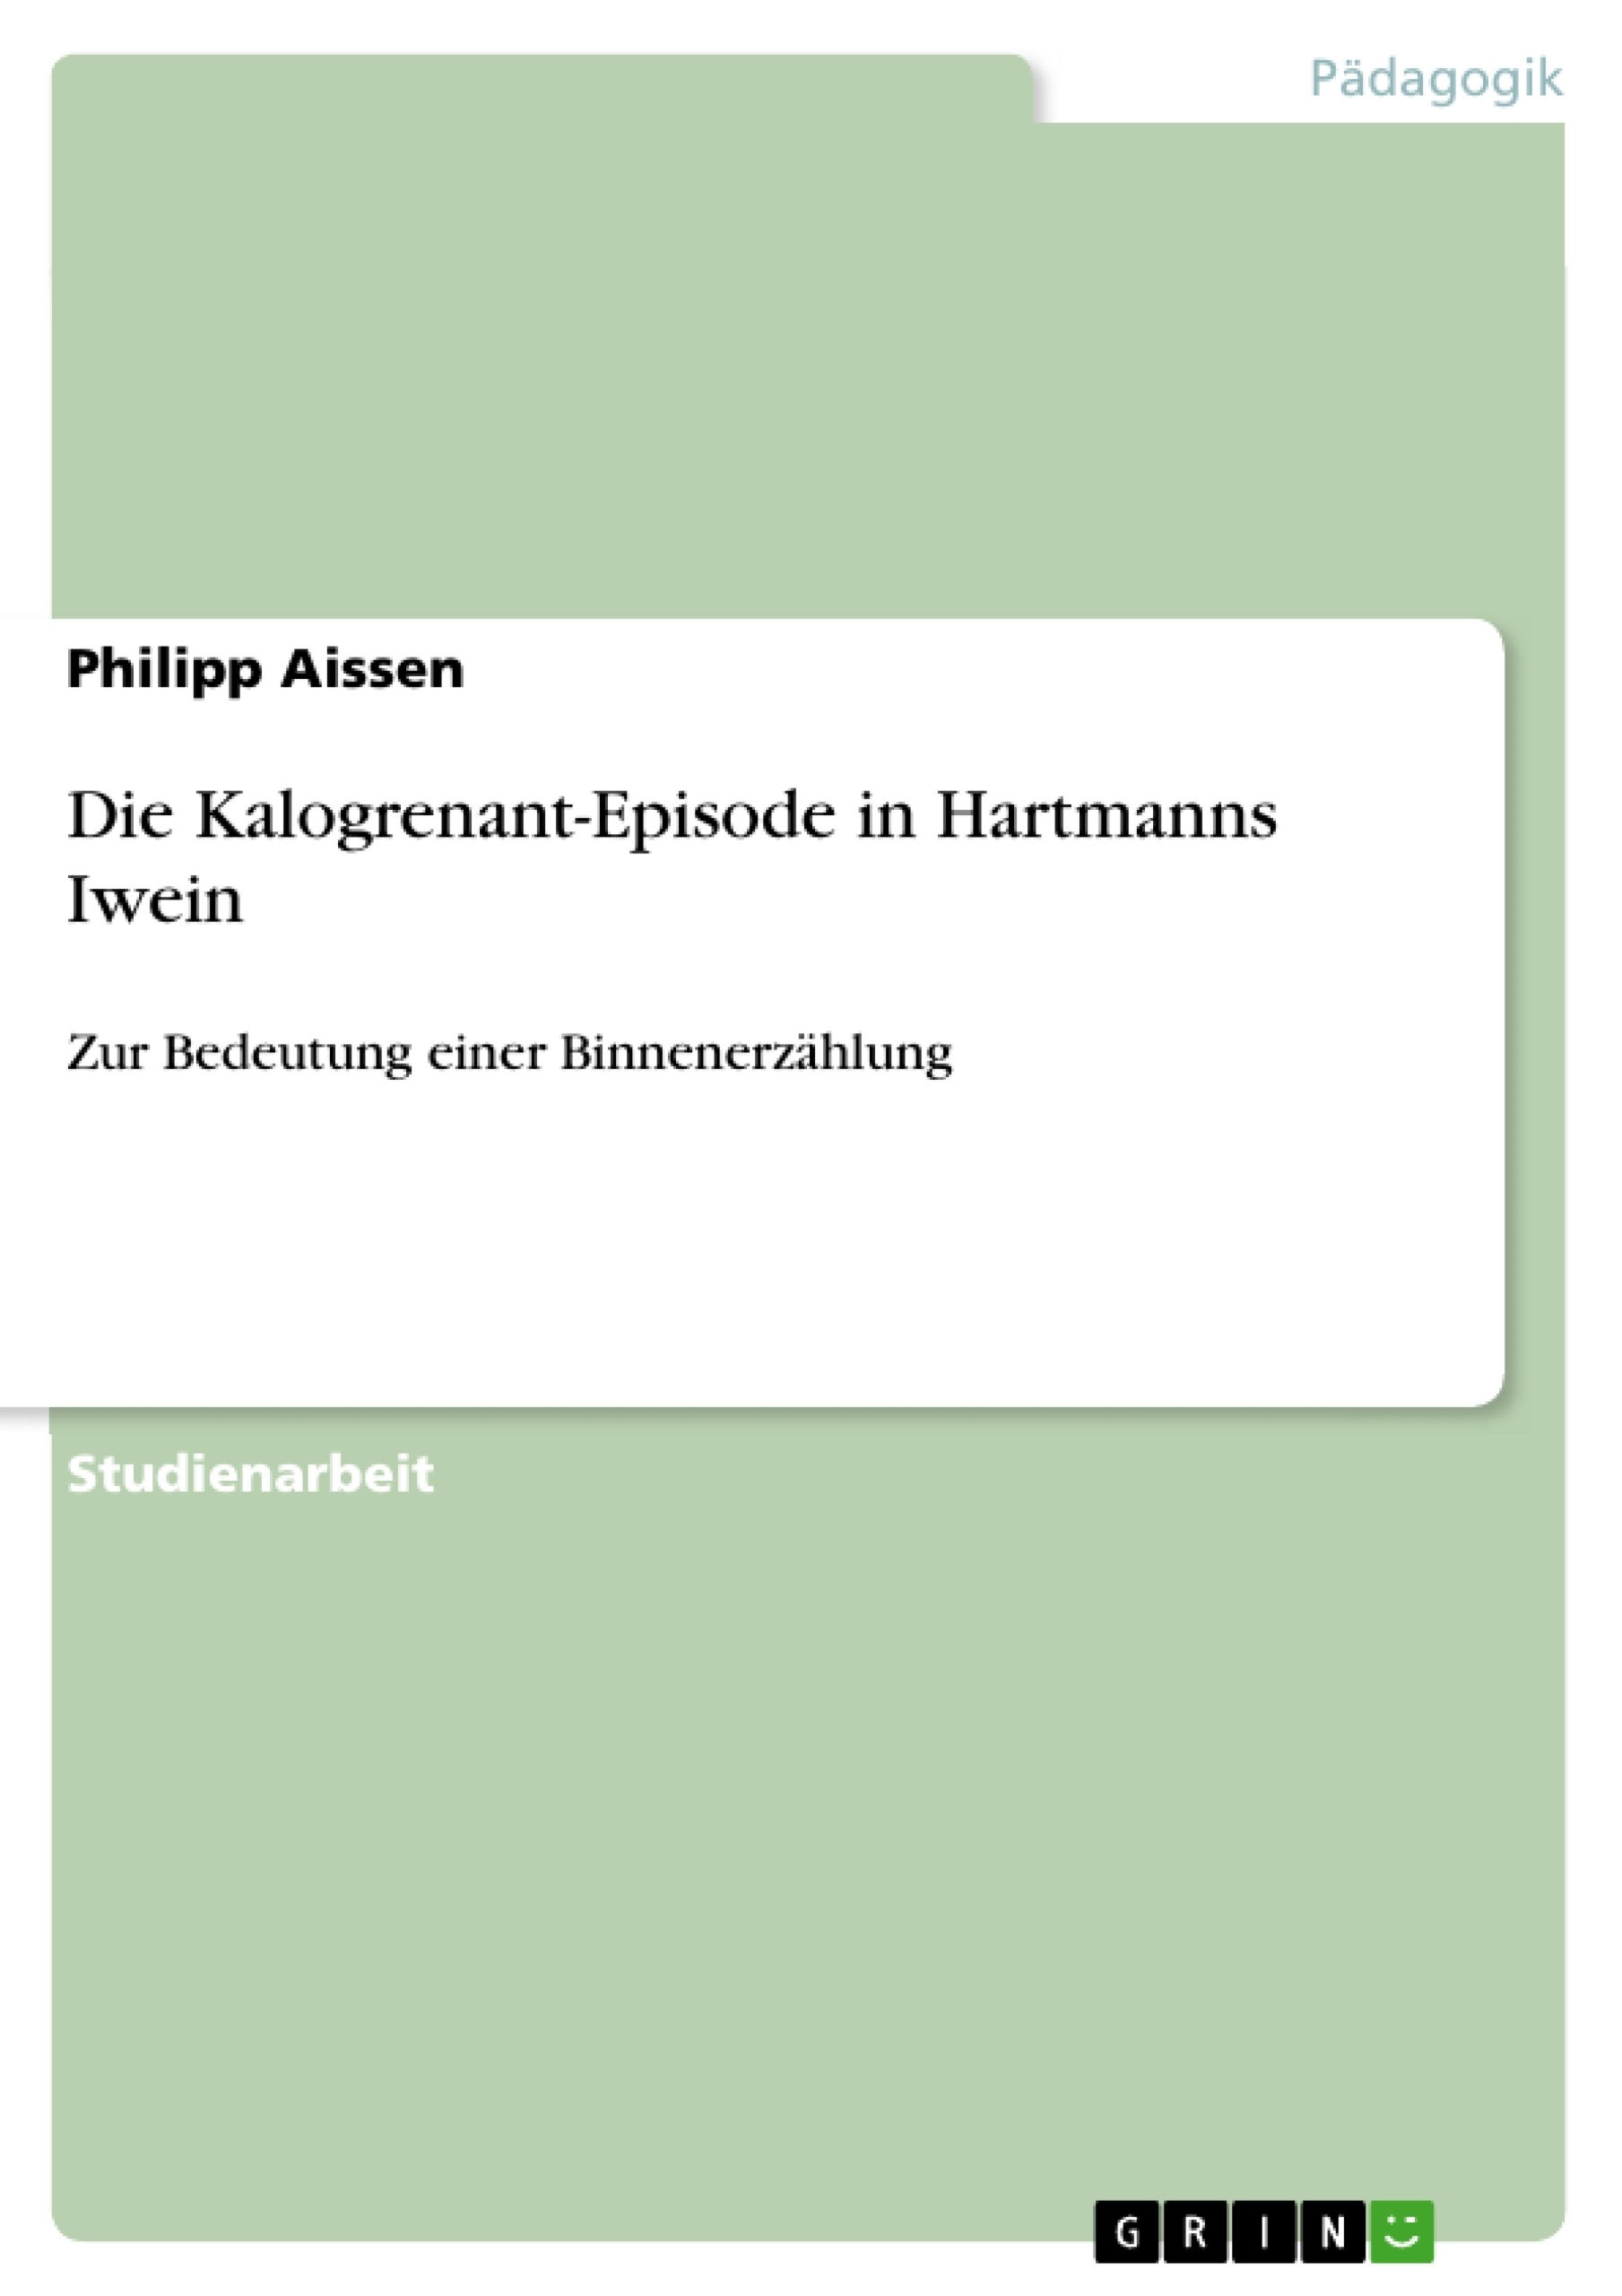 Título: Die Kalogrenant-Episode in Hartmanns Iwein 